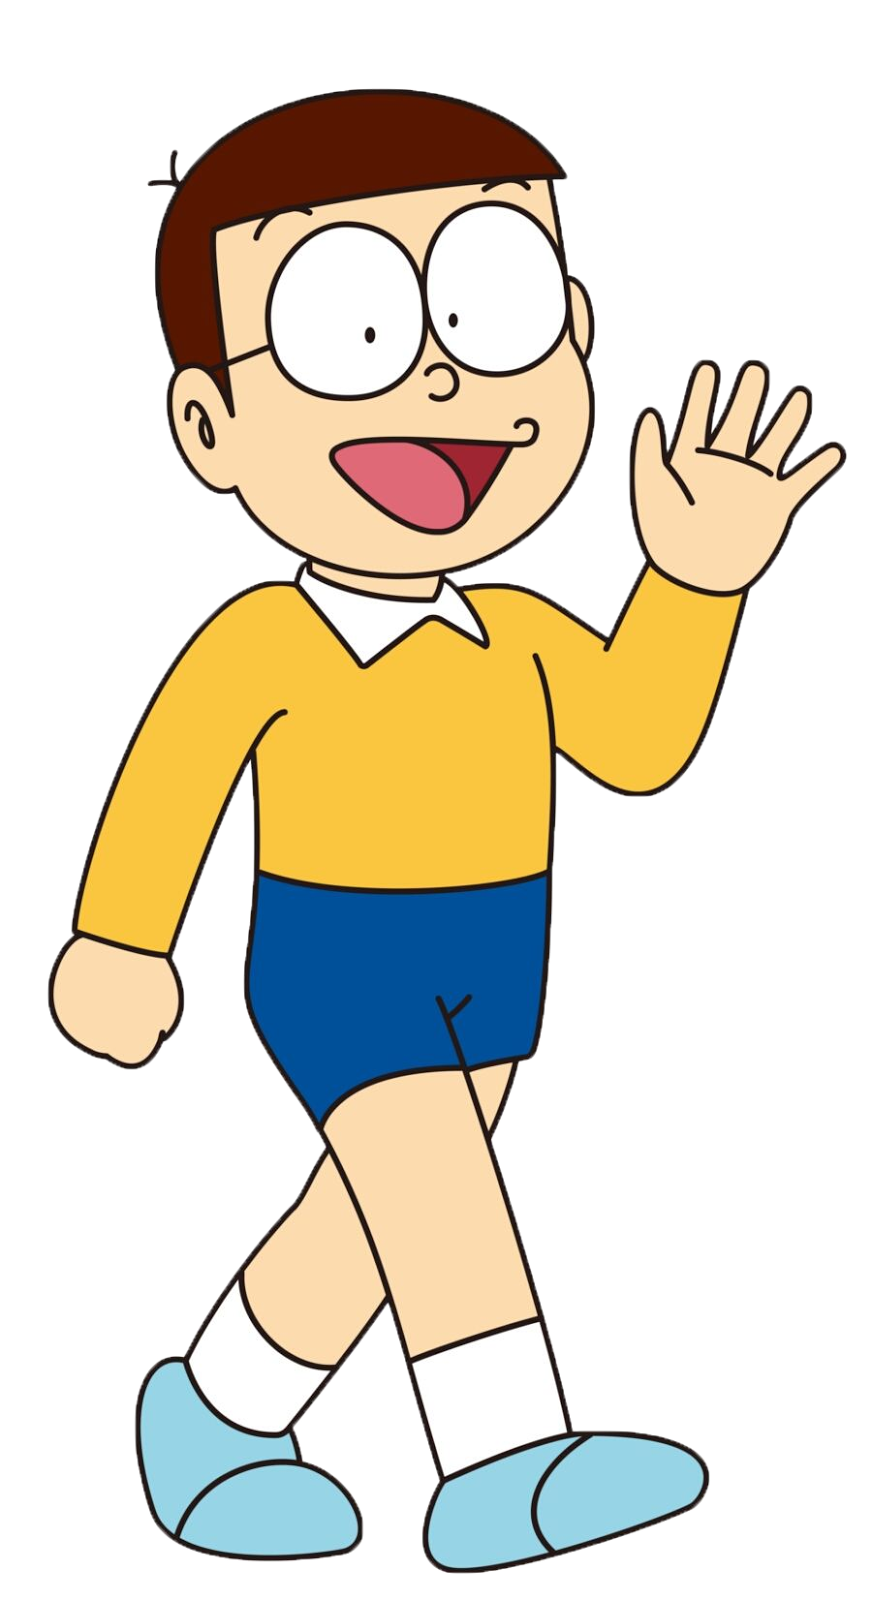 Doraemon Cartoon Character Pictures Lasemsourcing